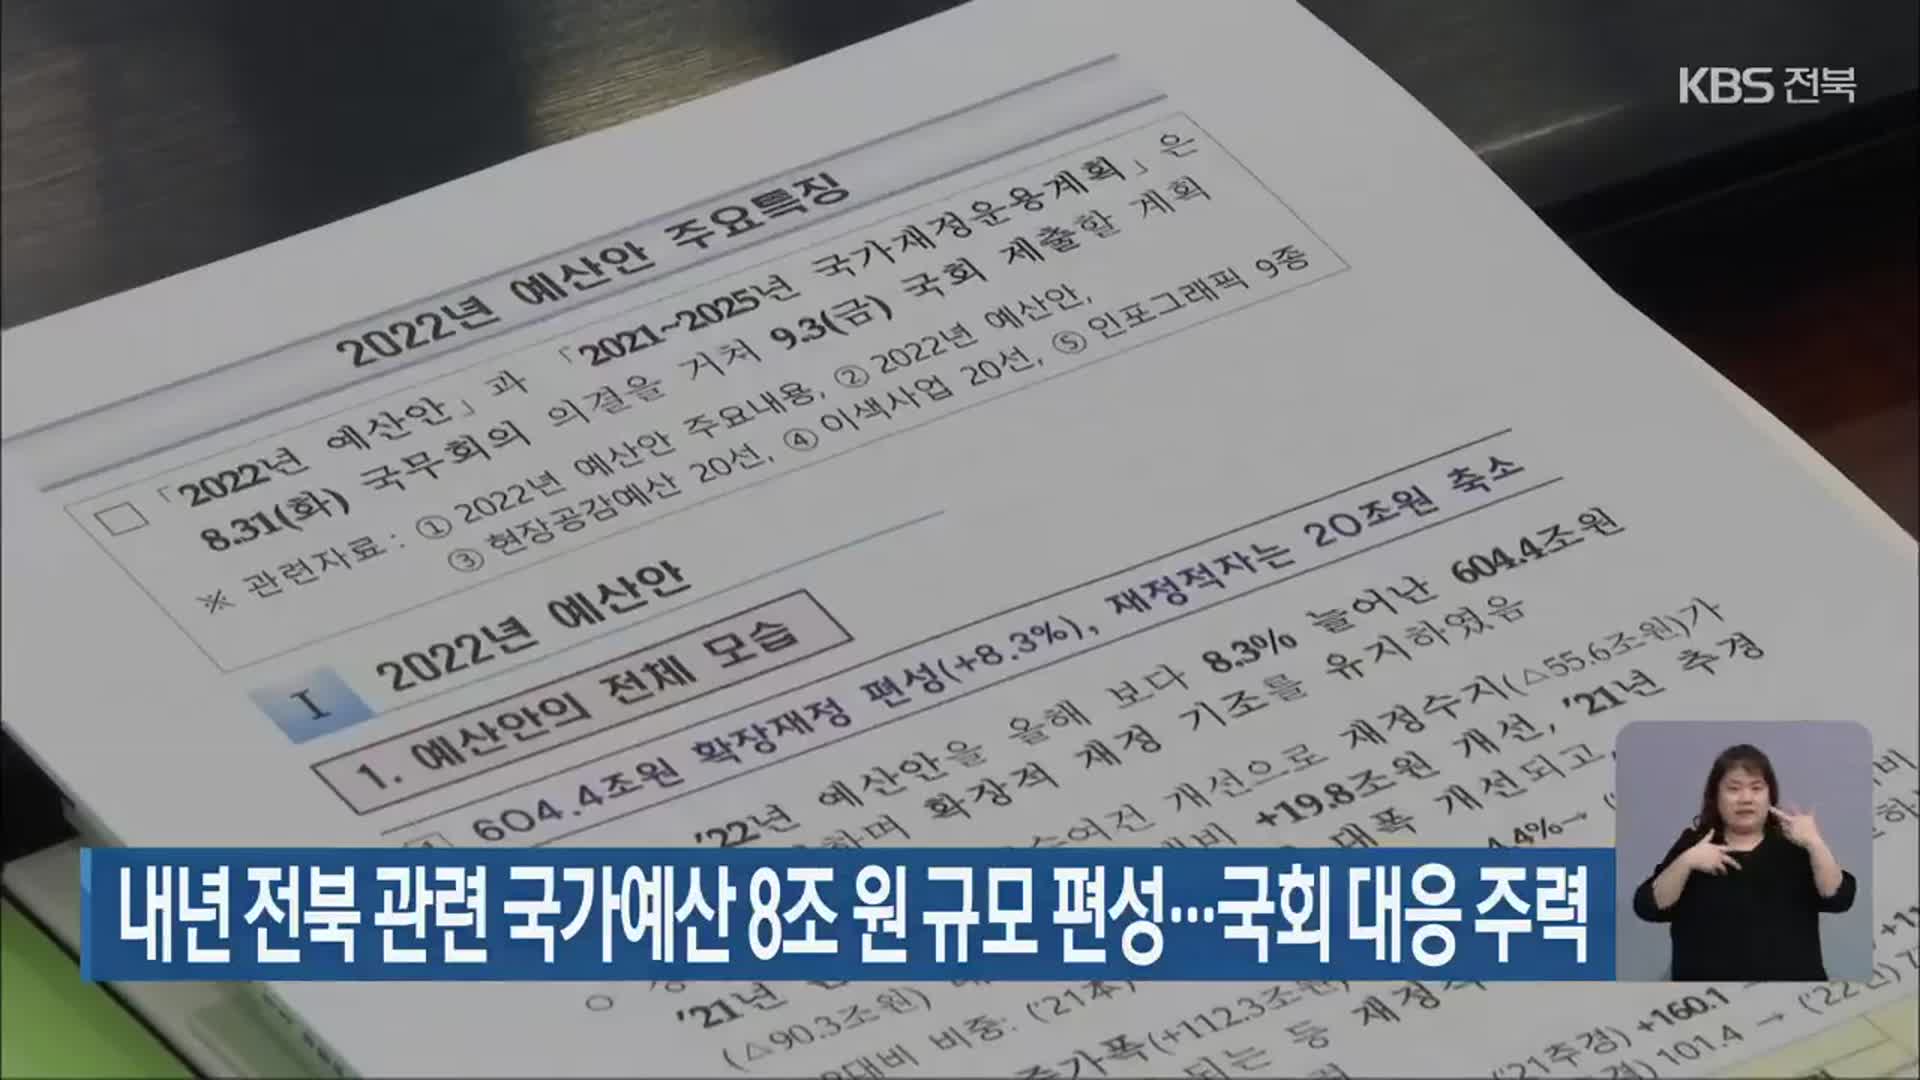 내년 전북 관련 국가예산 8조 원 규모 편성…국회 대응 주력